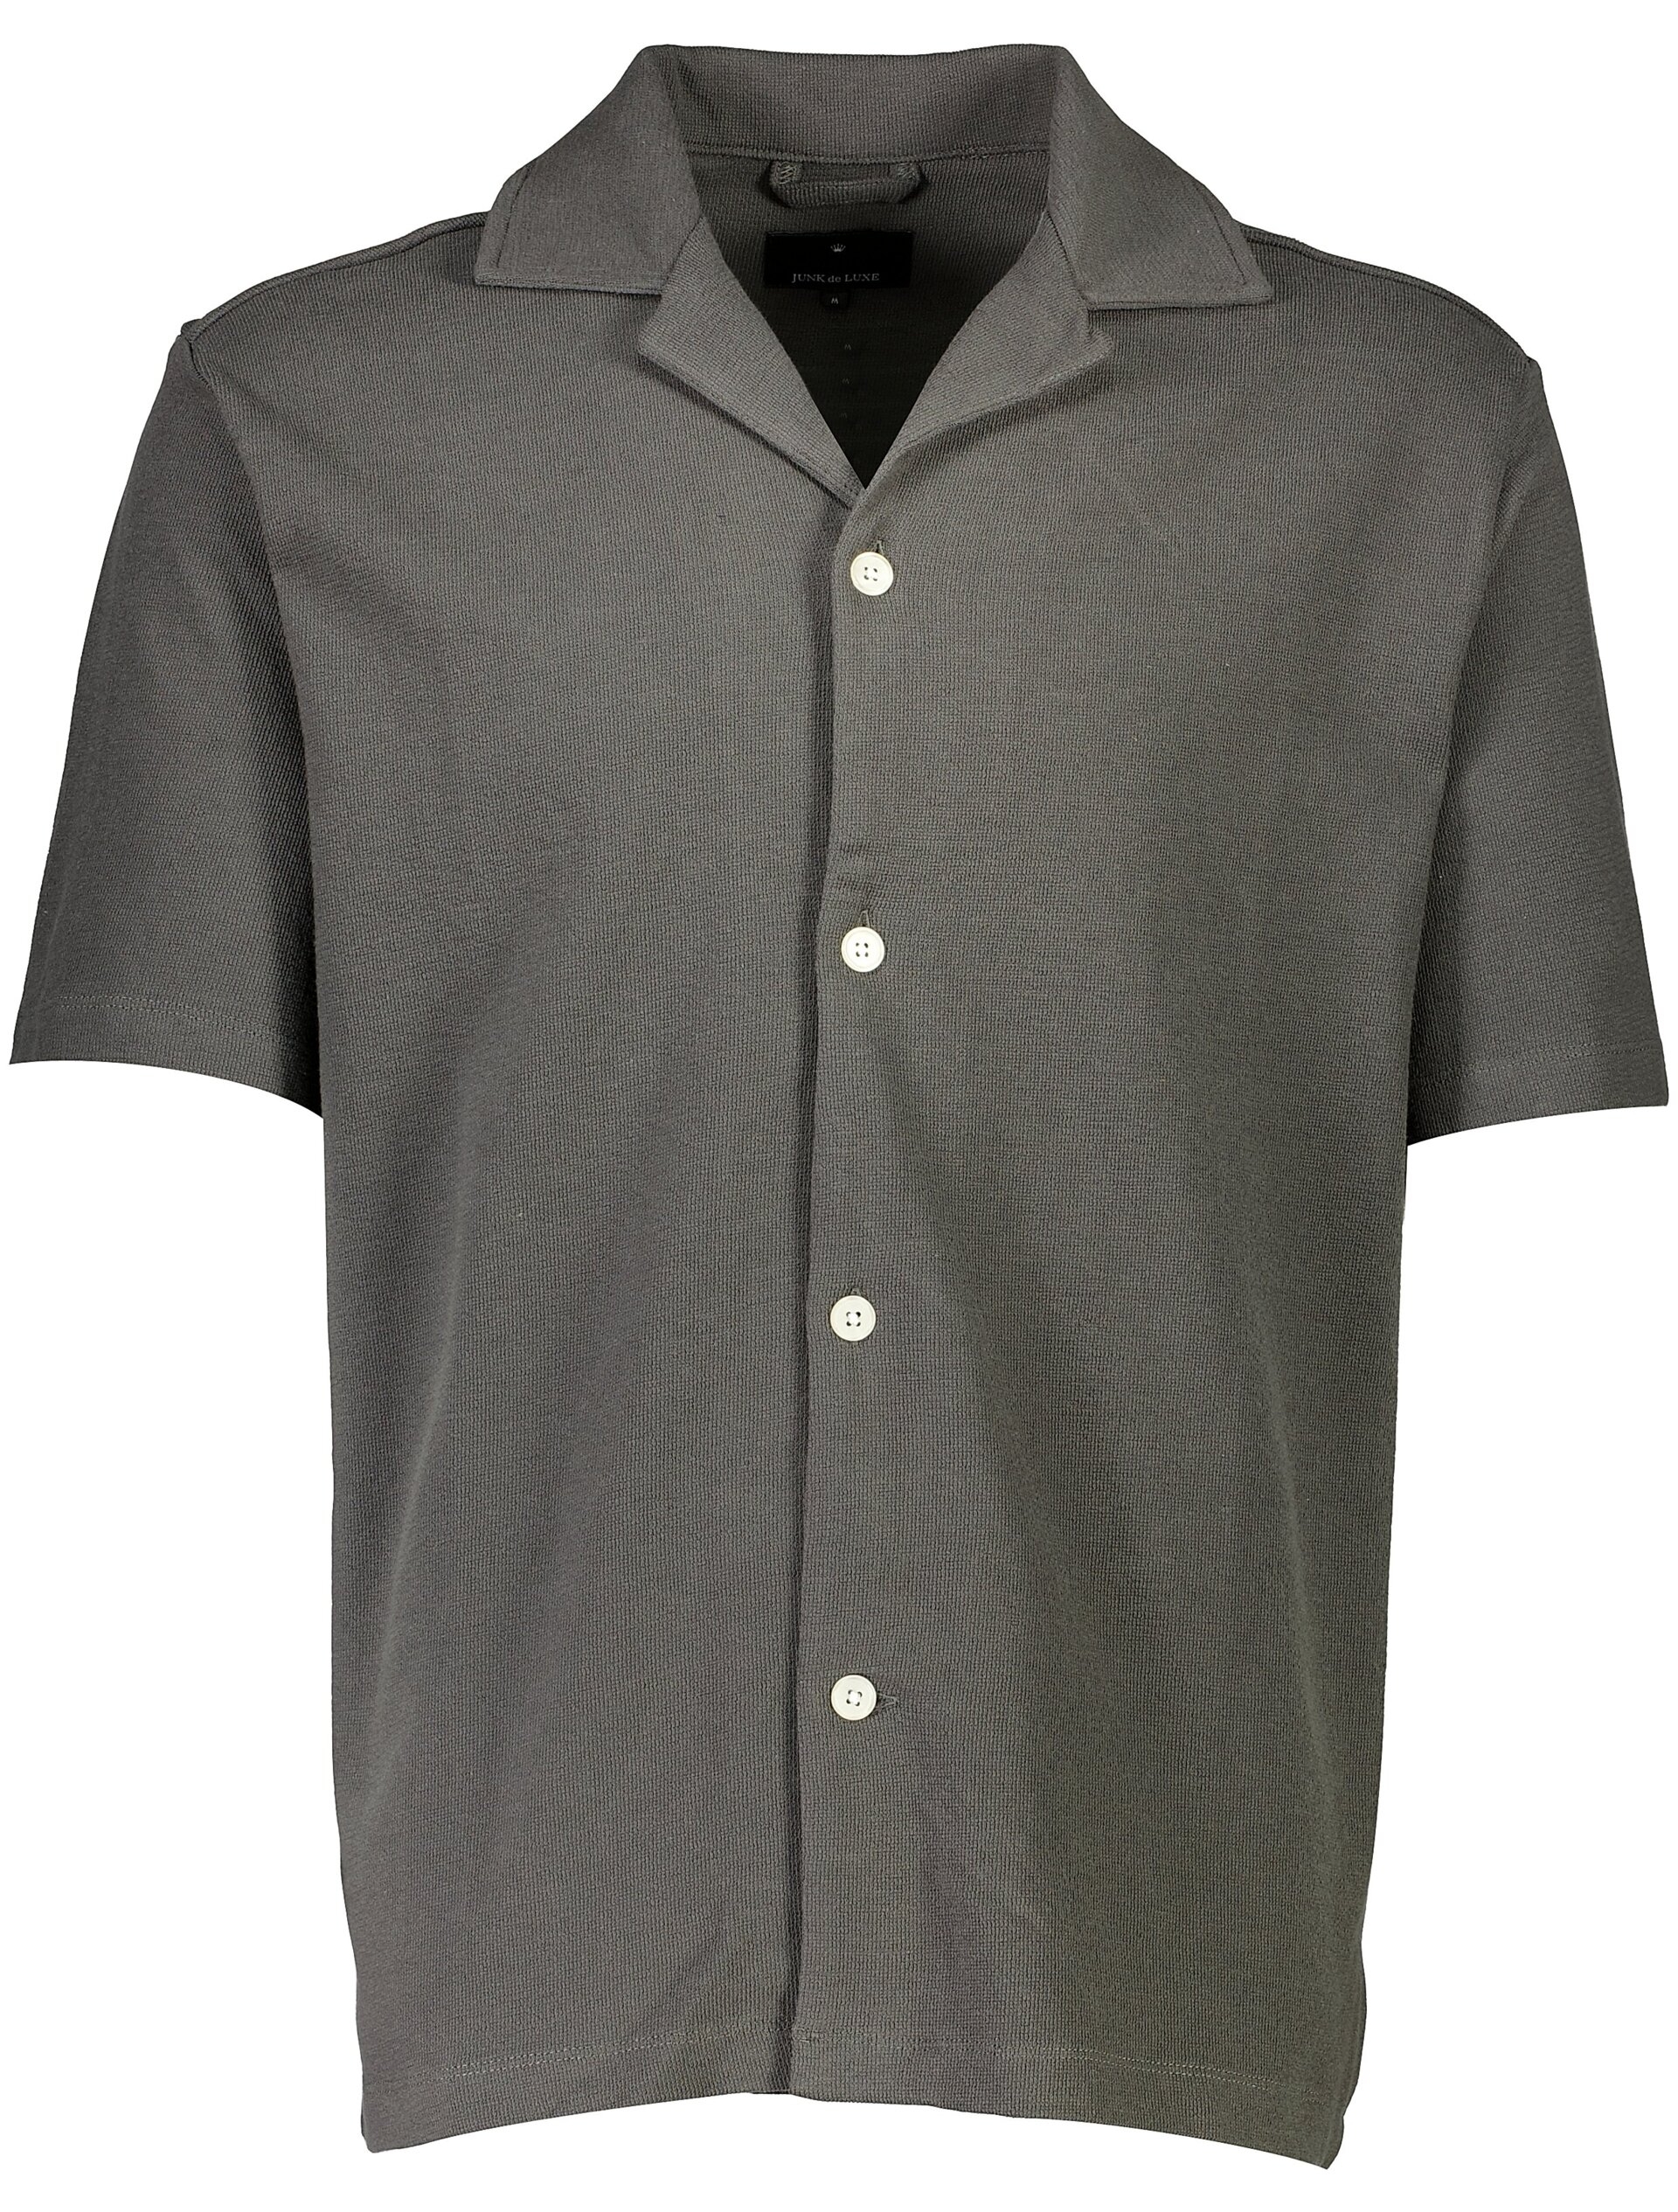 Junk de Luxe Casual shirt grey / charcoal